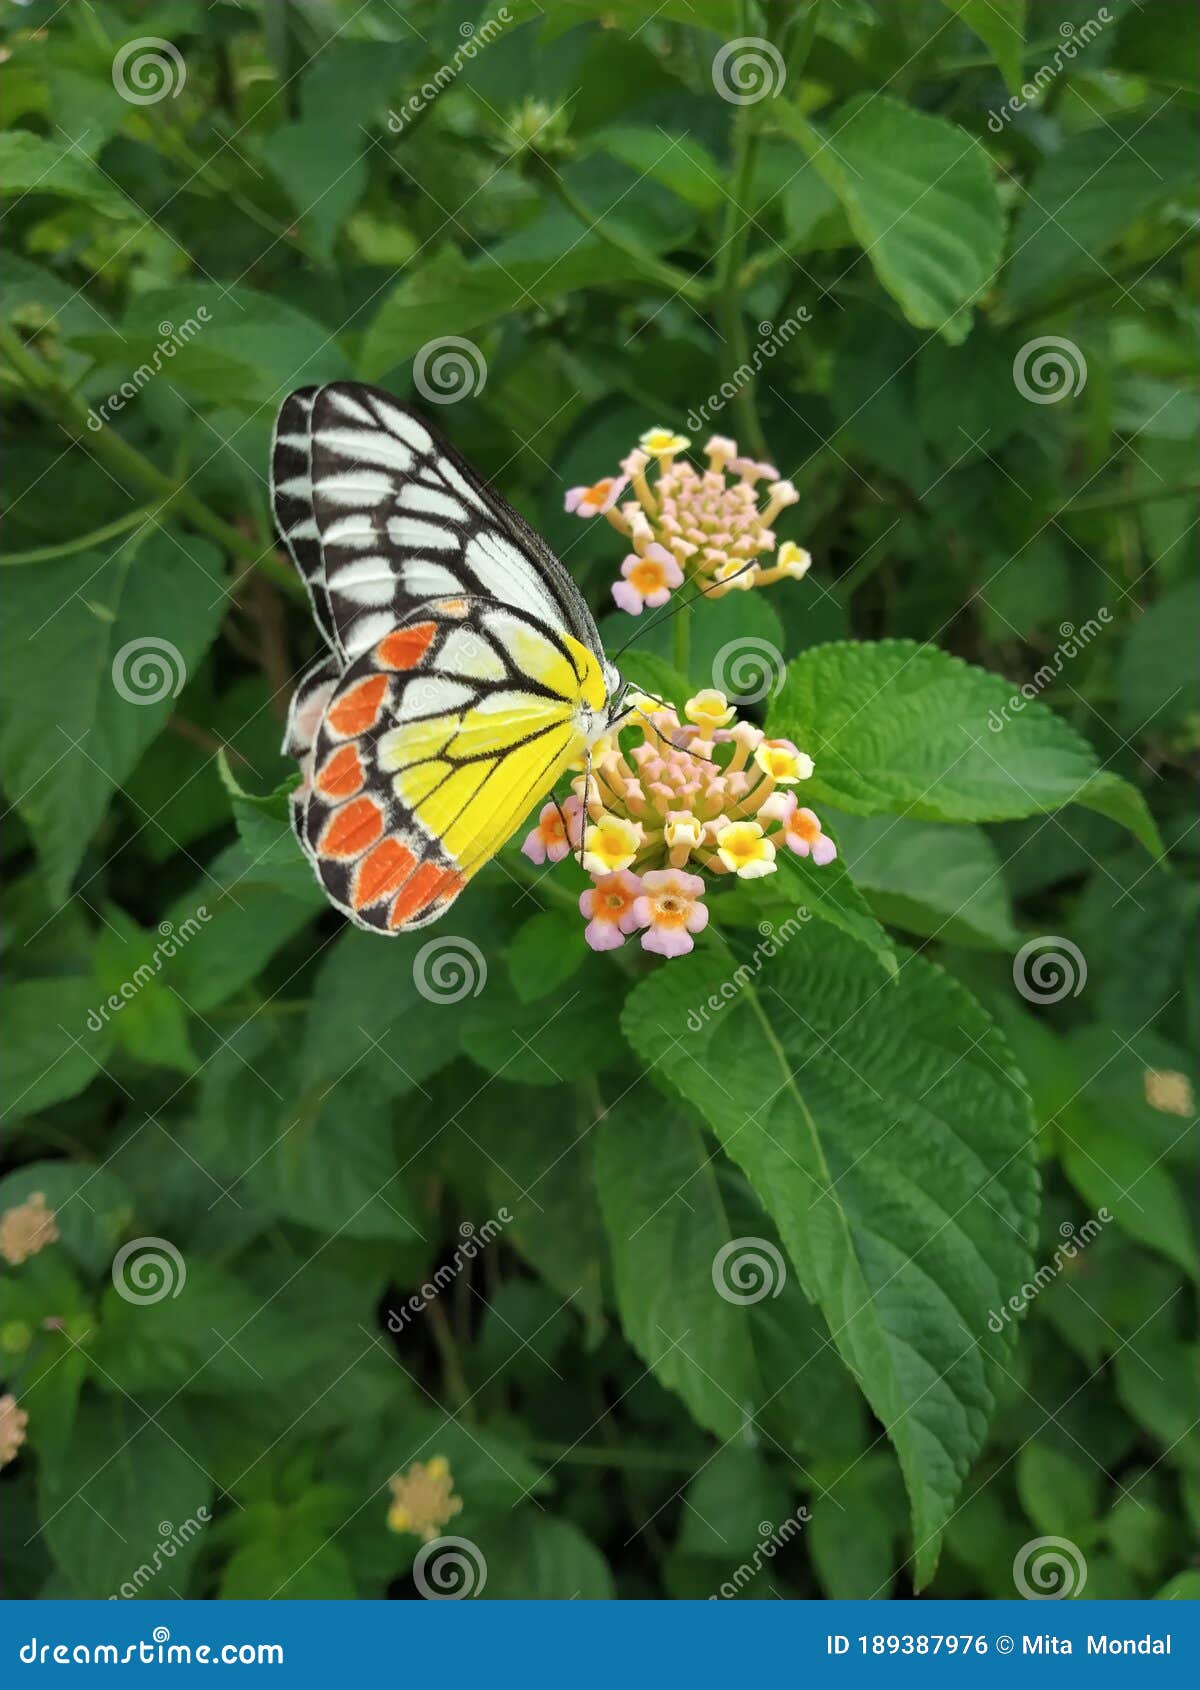 common jezebel butterfly sucking honey from flower